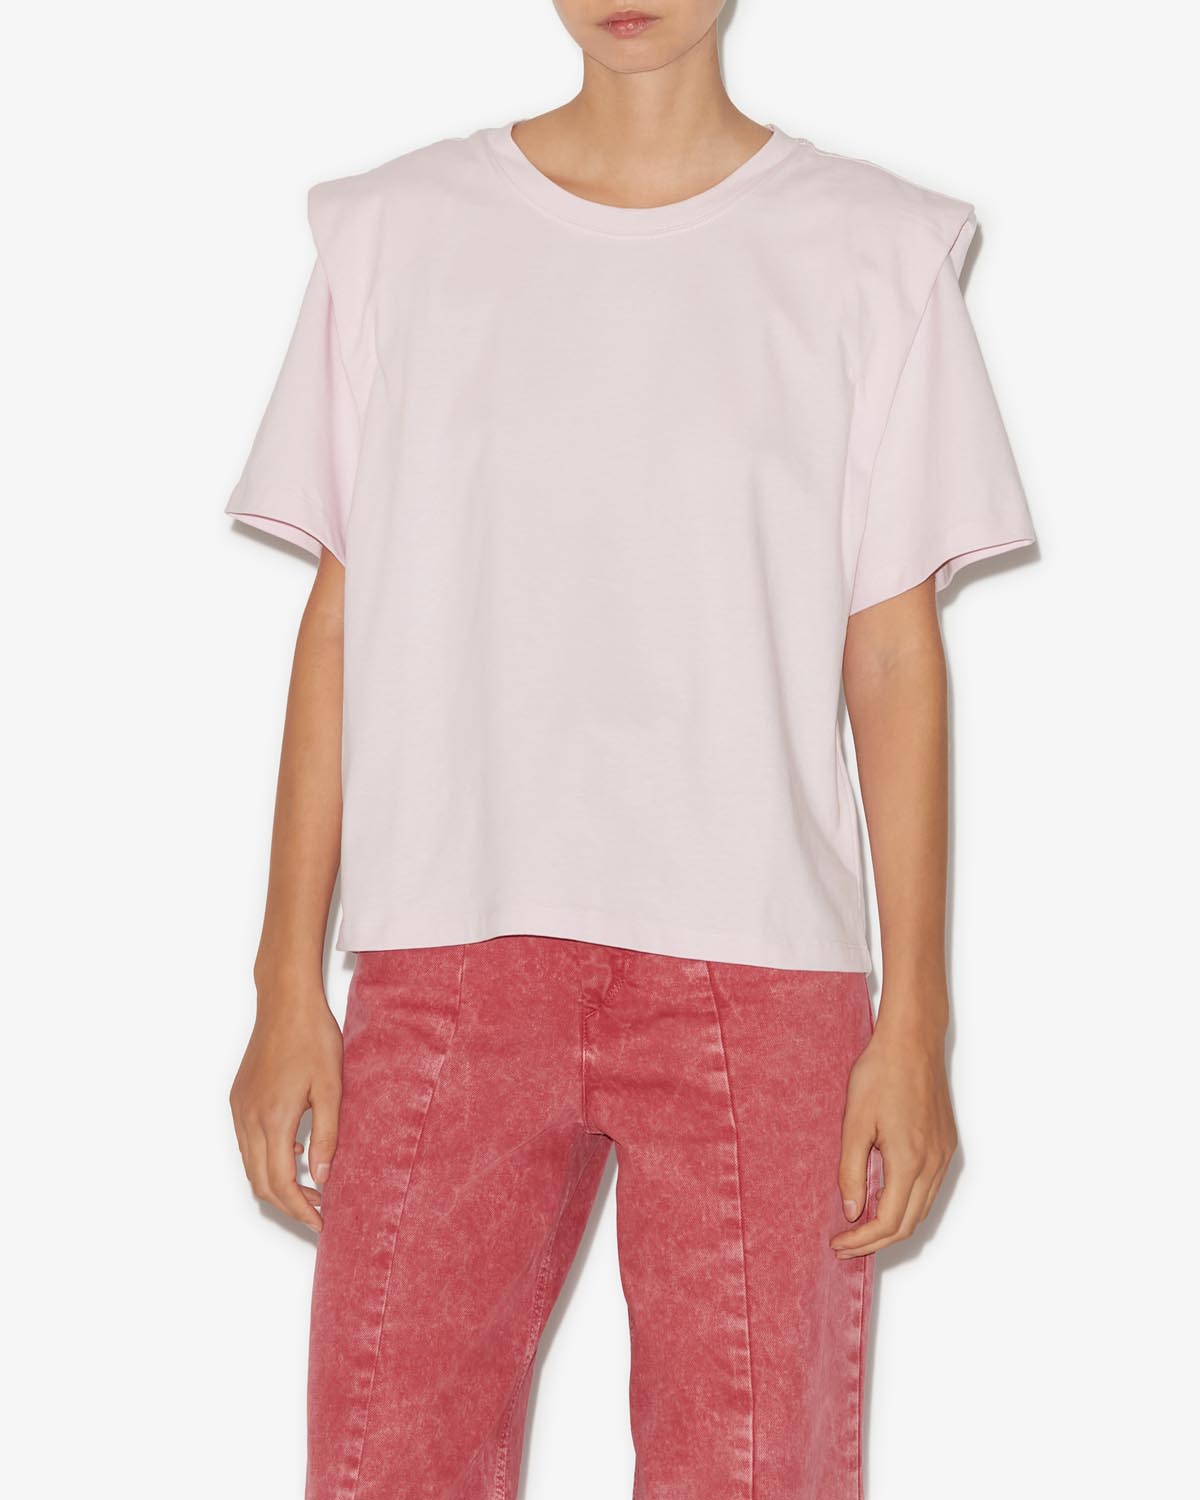 Zelitos tee shirt Woman Light pink 11